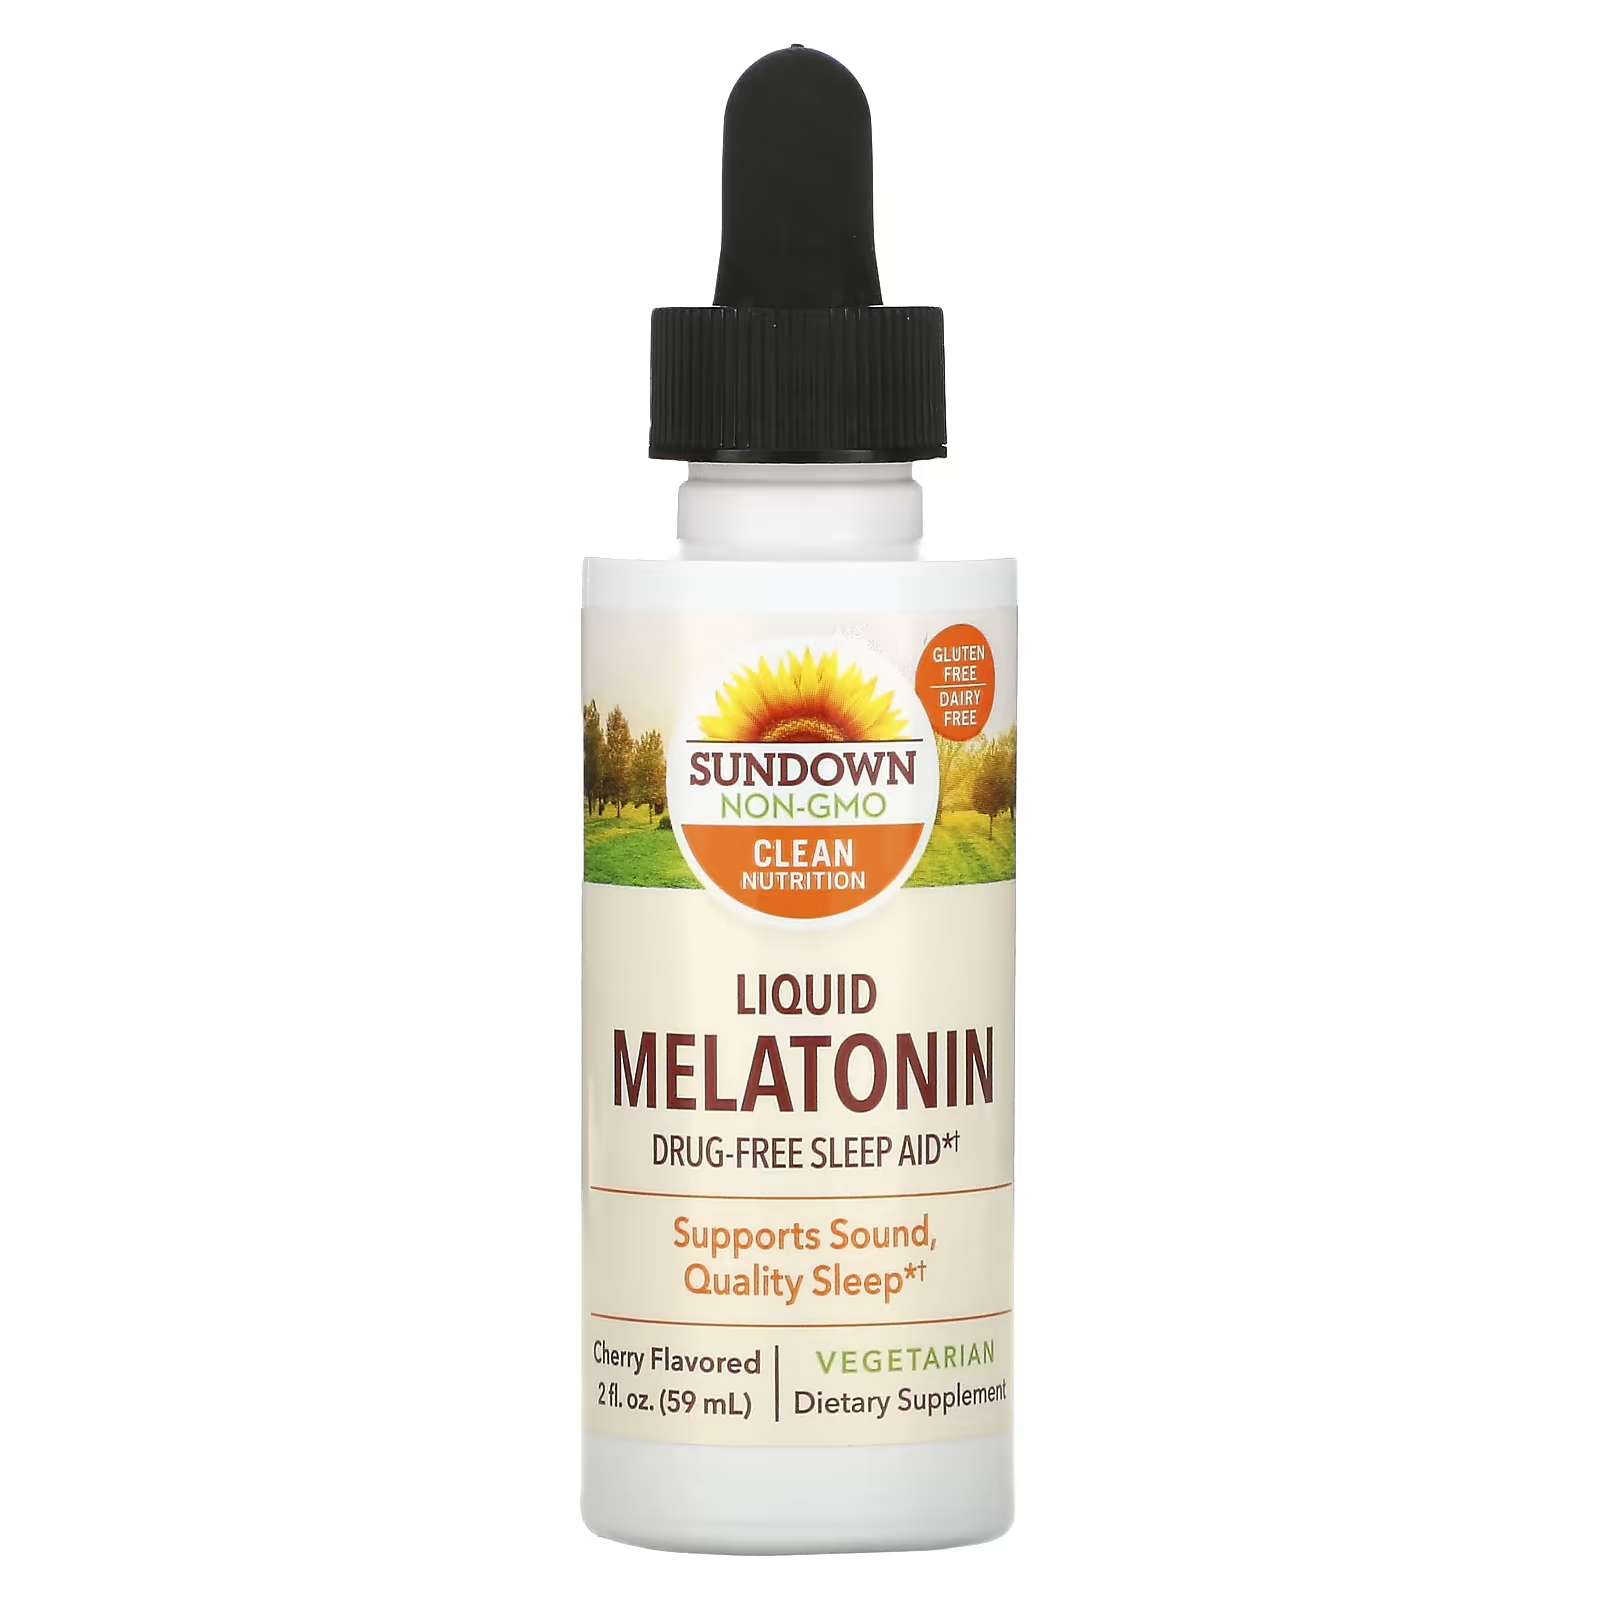 Жидкий мелатонин вишневый, 2 жидких унции (59 мл) Sundown Naturals жидкий мелатонин sundown naturals со вкусом вишни